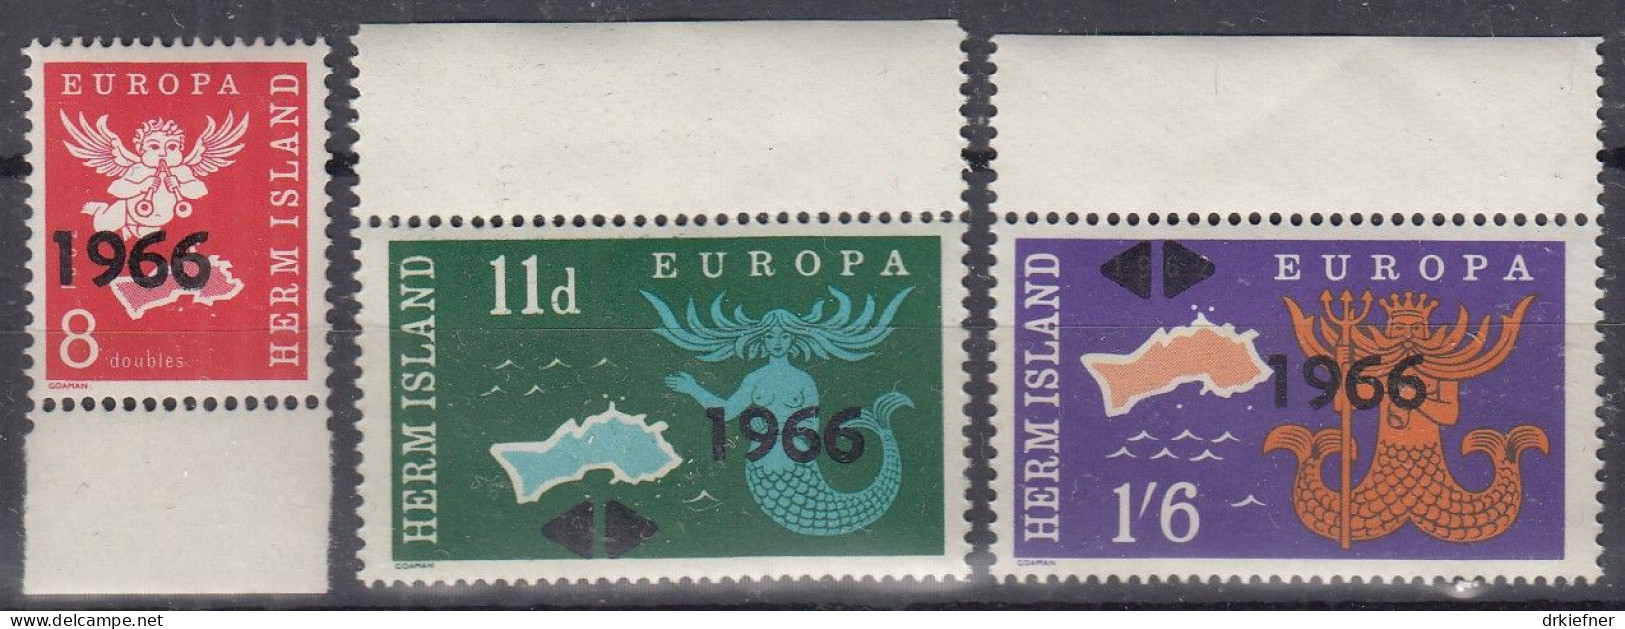 INSEL HERM (Guernsey), Nichtamtl. Briefmarken, 3 Marken, Postfrisch **, Europa 1966, Landkarte, Symbole - Guernsey